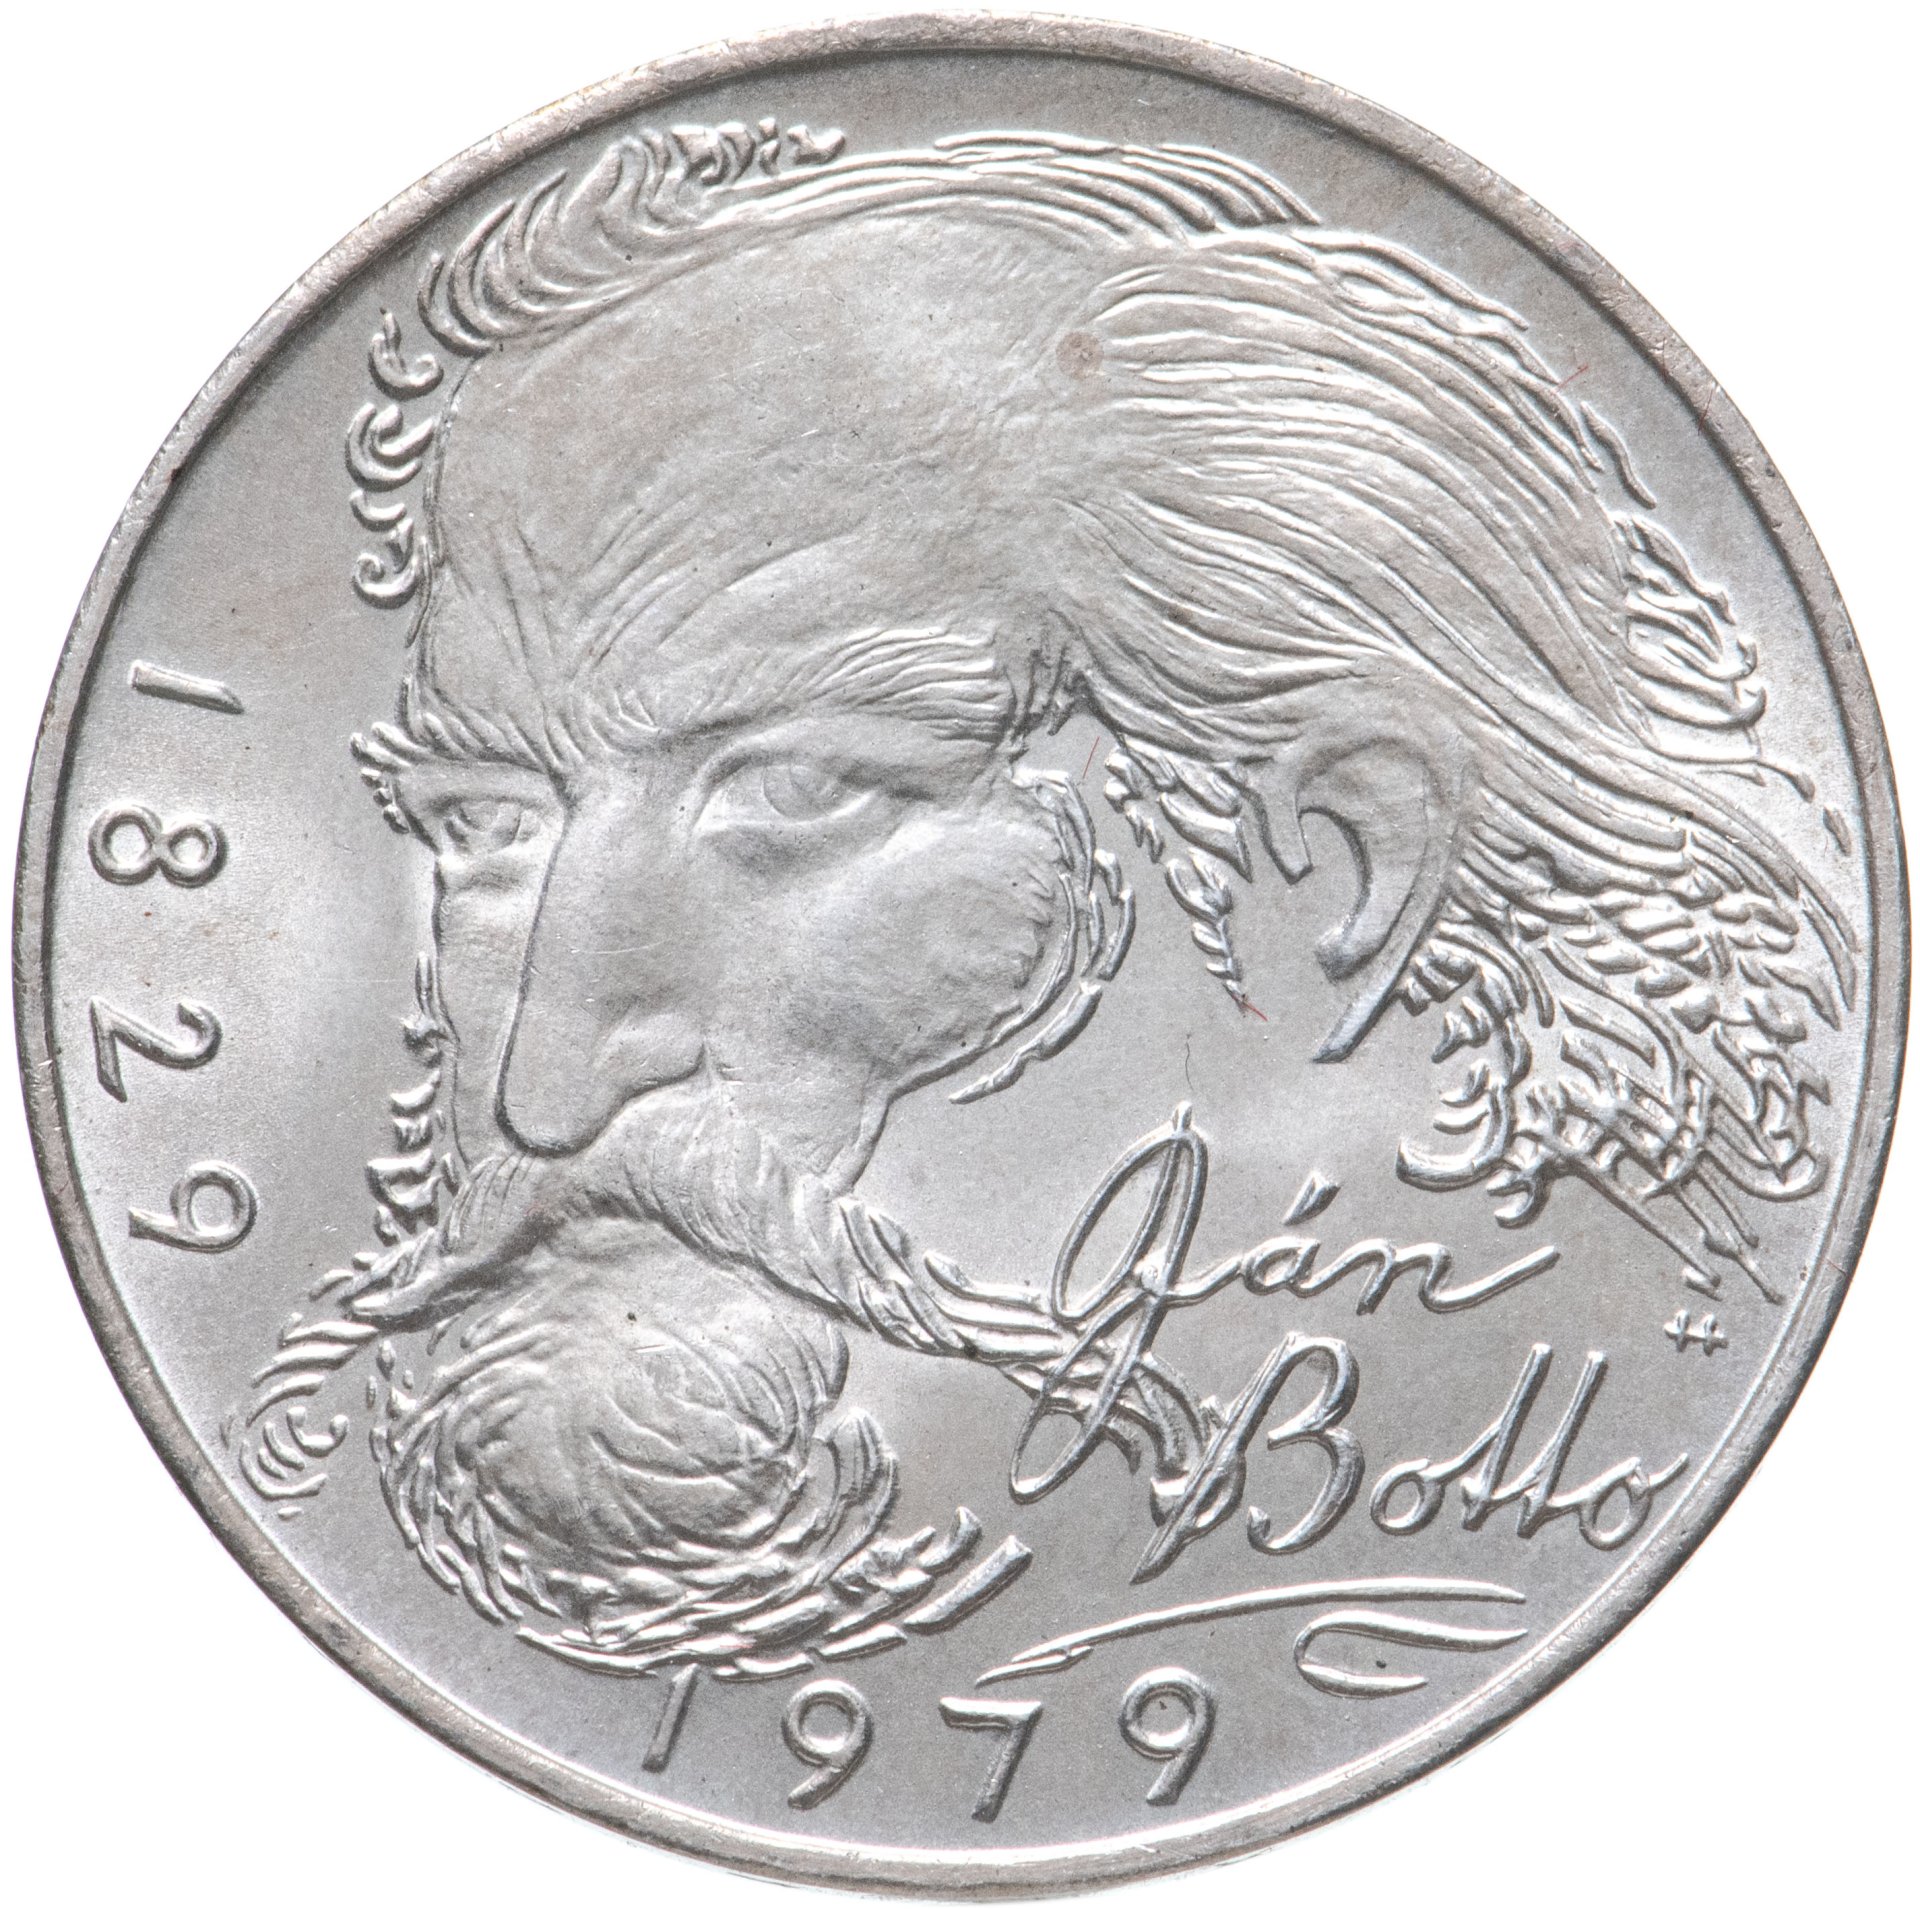 100 крон чехословакия. Серебряные монеты Чехословакии купить.